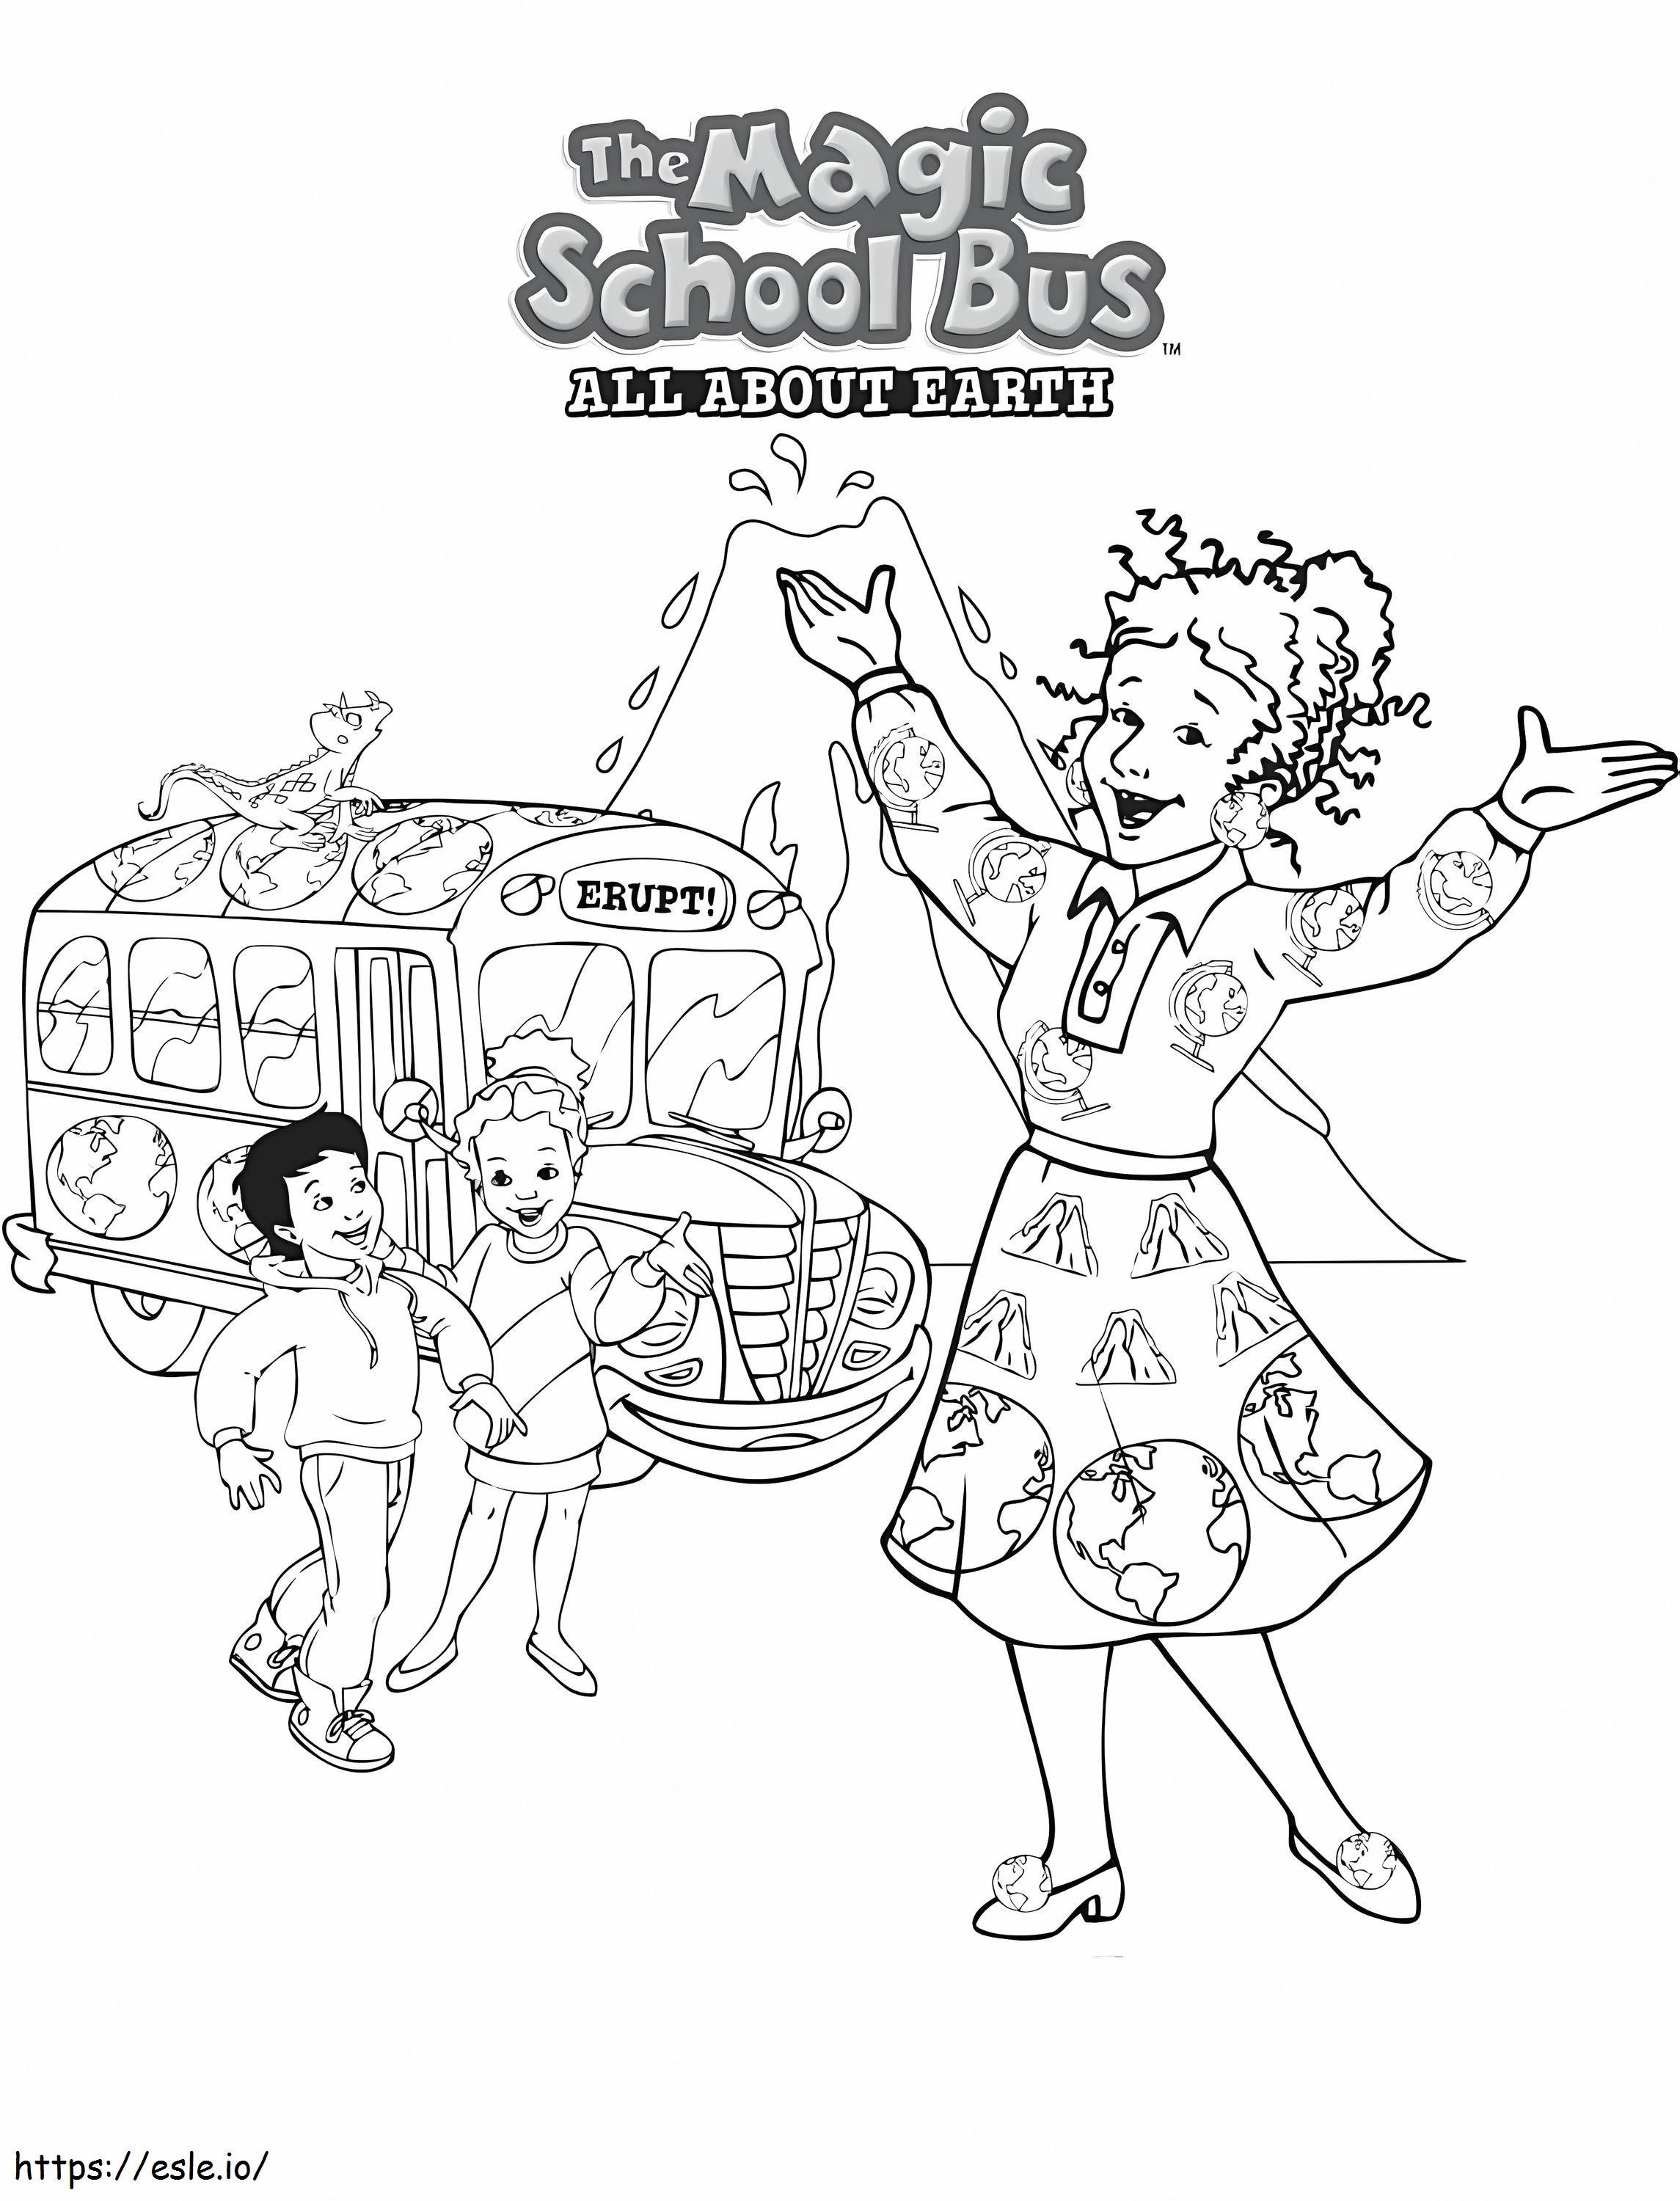 Magic School Bus 2 coloring page